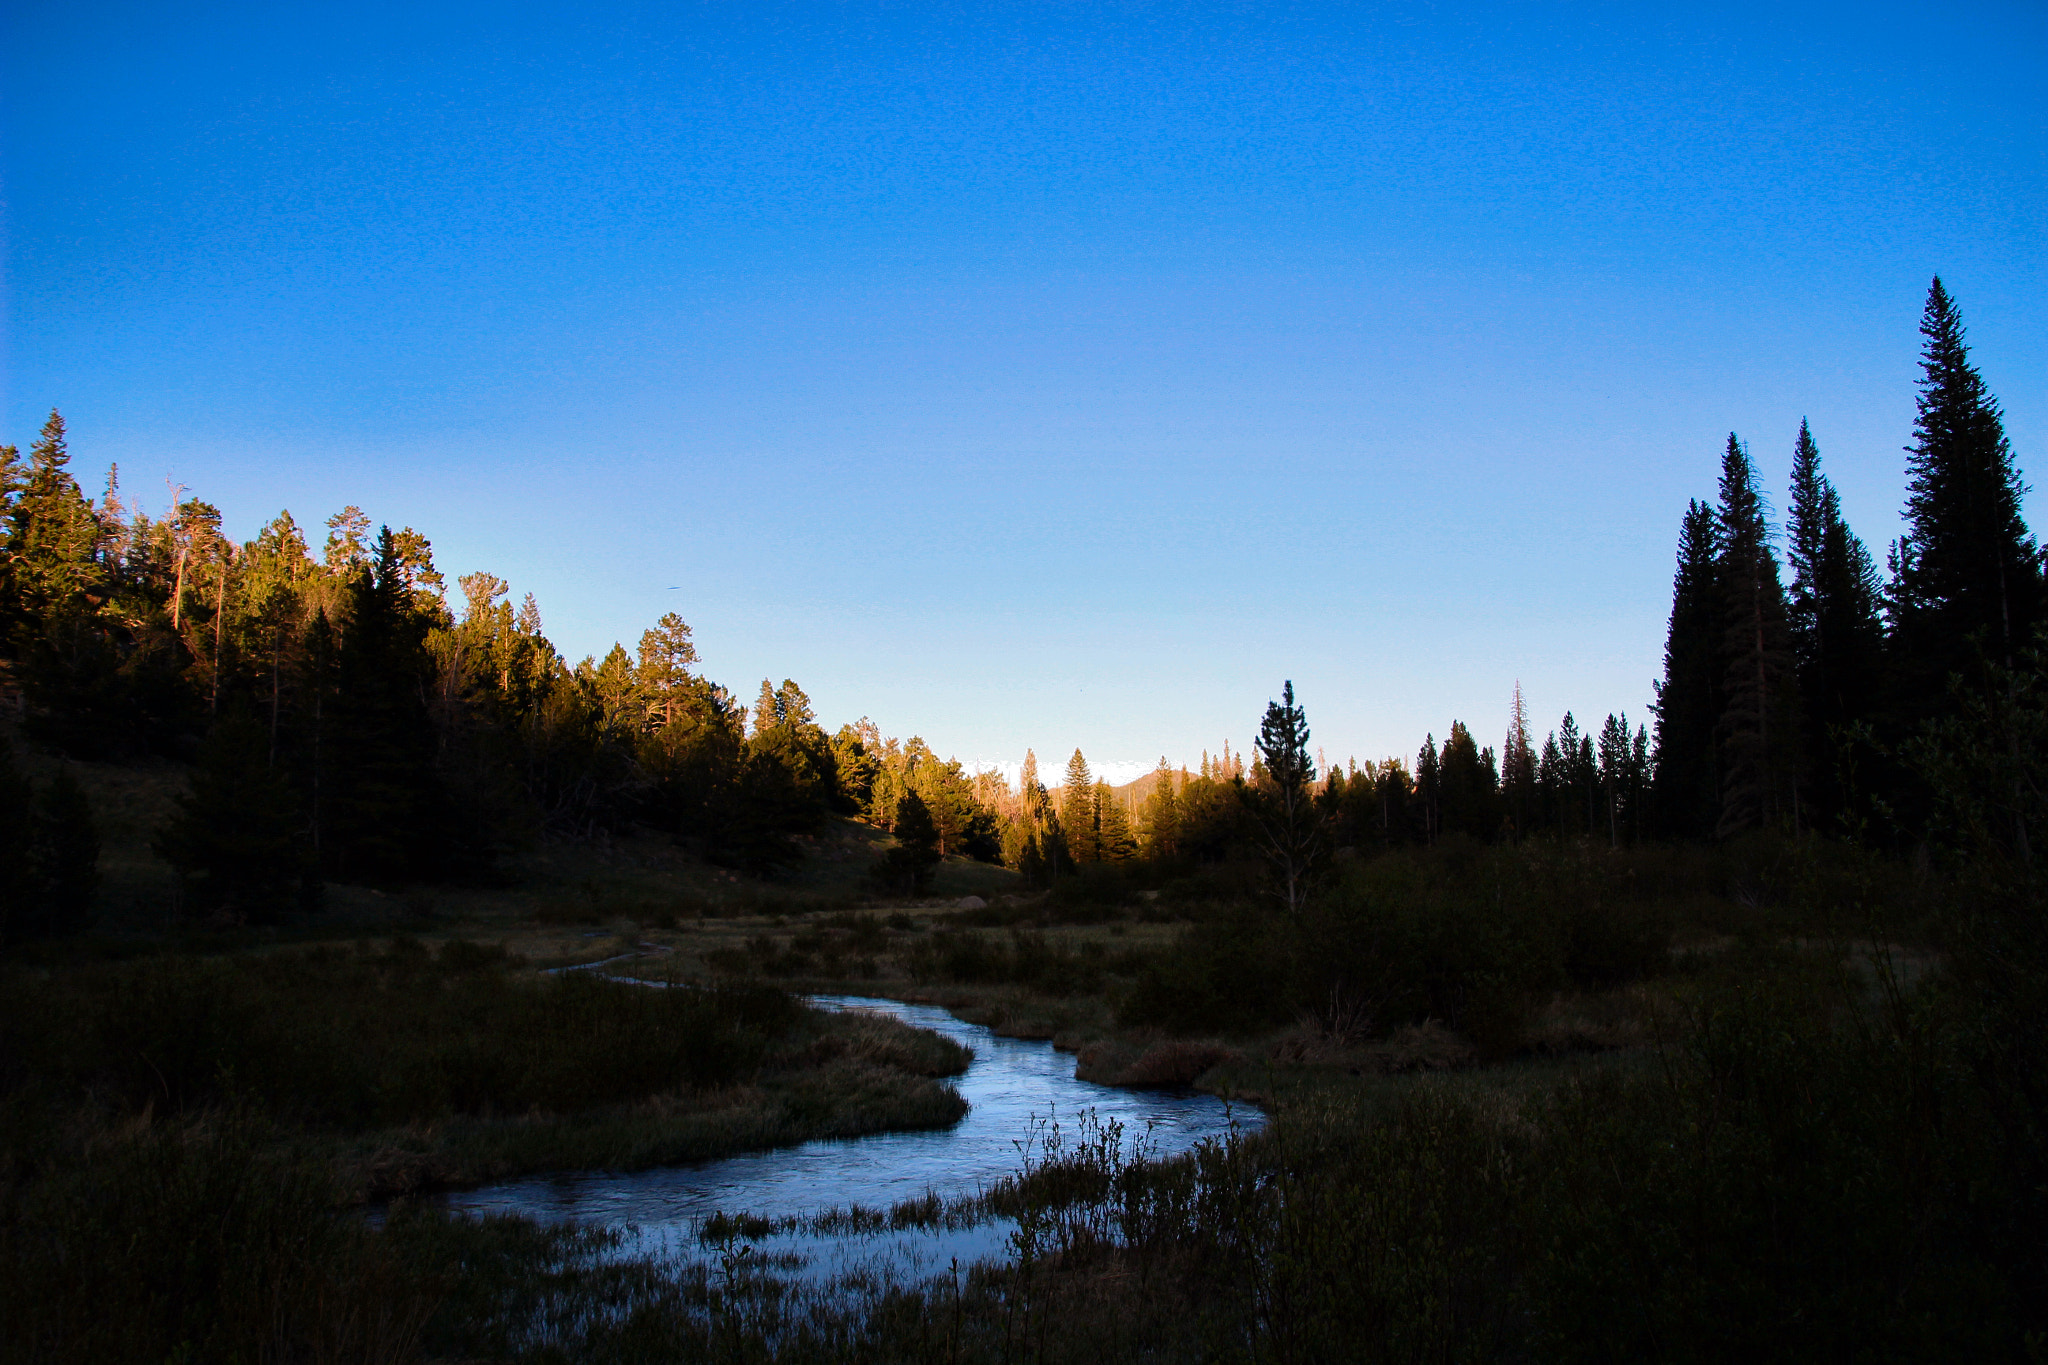 Canon EOS 100D (EOS Rebel SL1 / EOS Kiss X7) sample photo. Hidden vally creek sunset photography